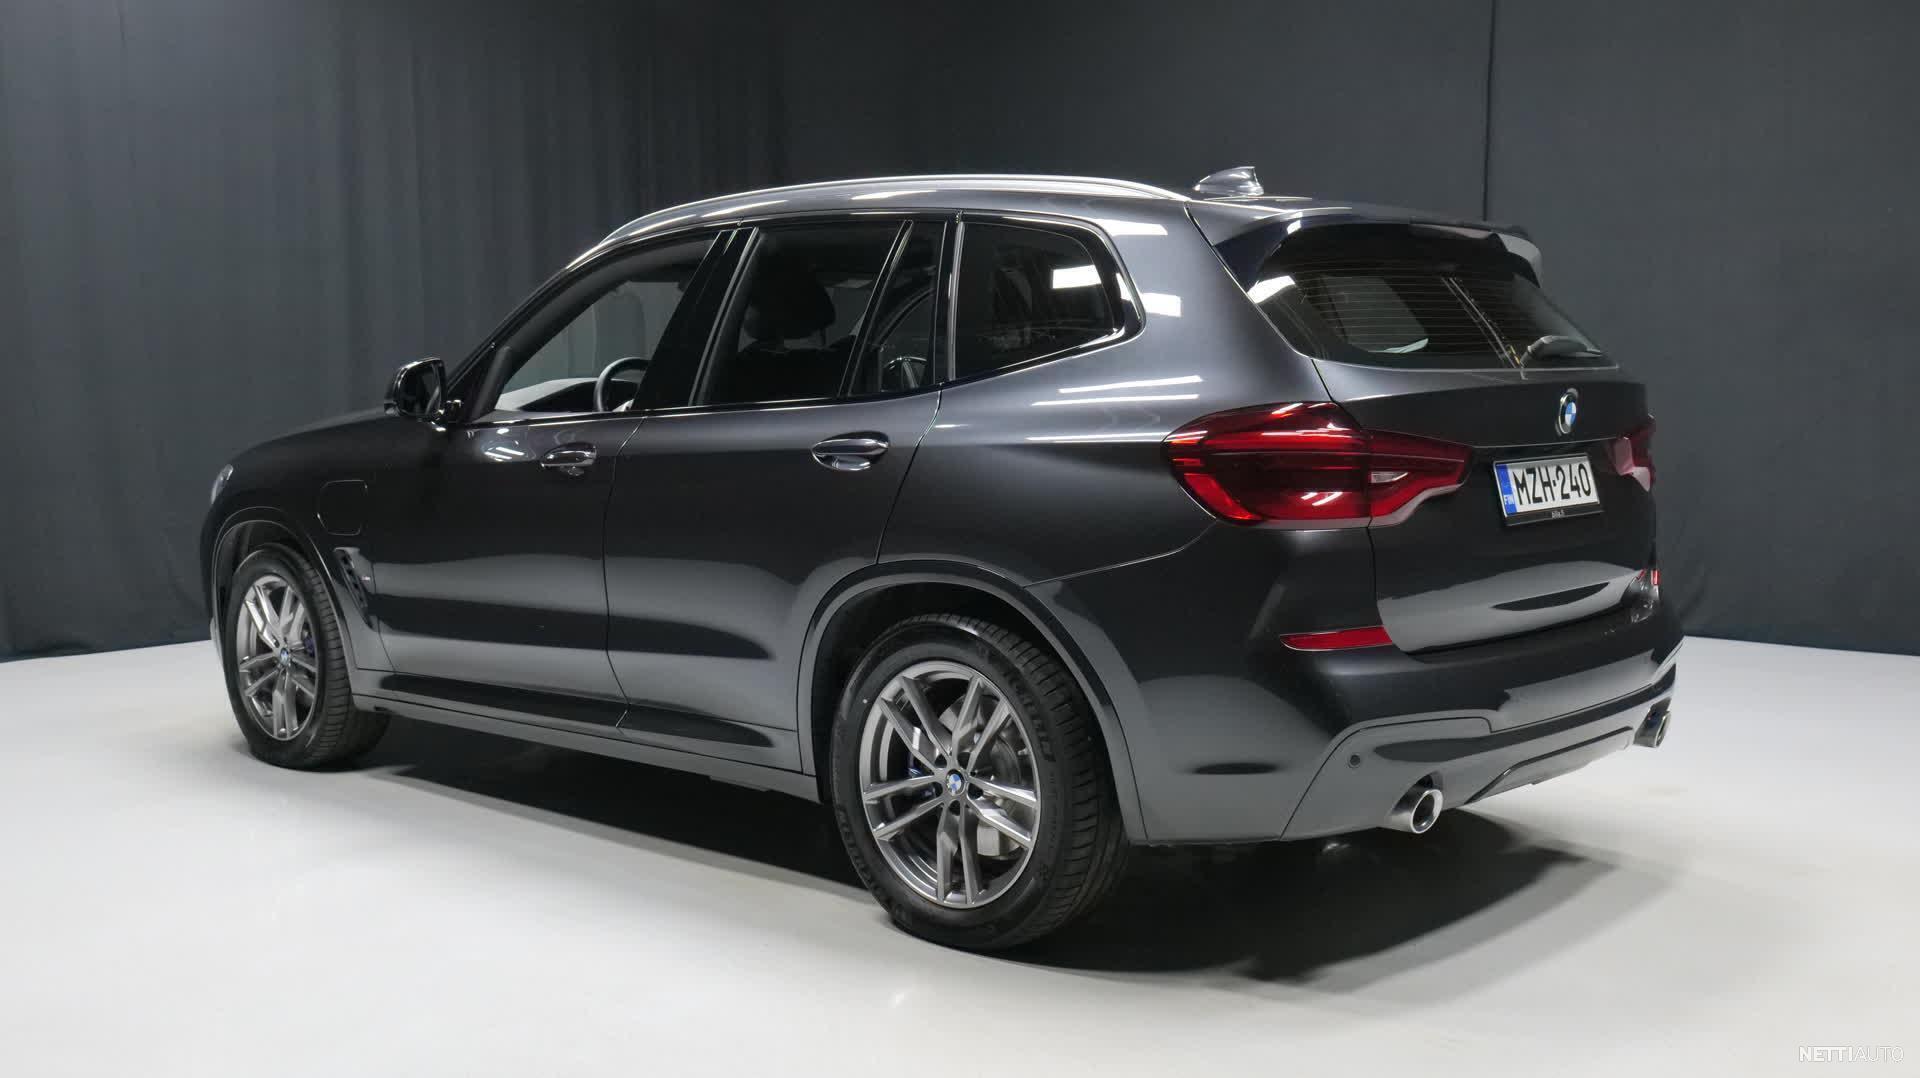 BMW X3 SUV (G01): Models, Hybrid & Technical Data